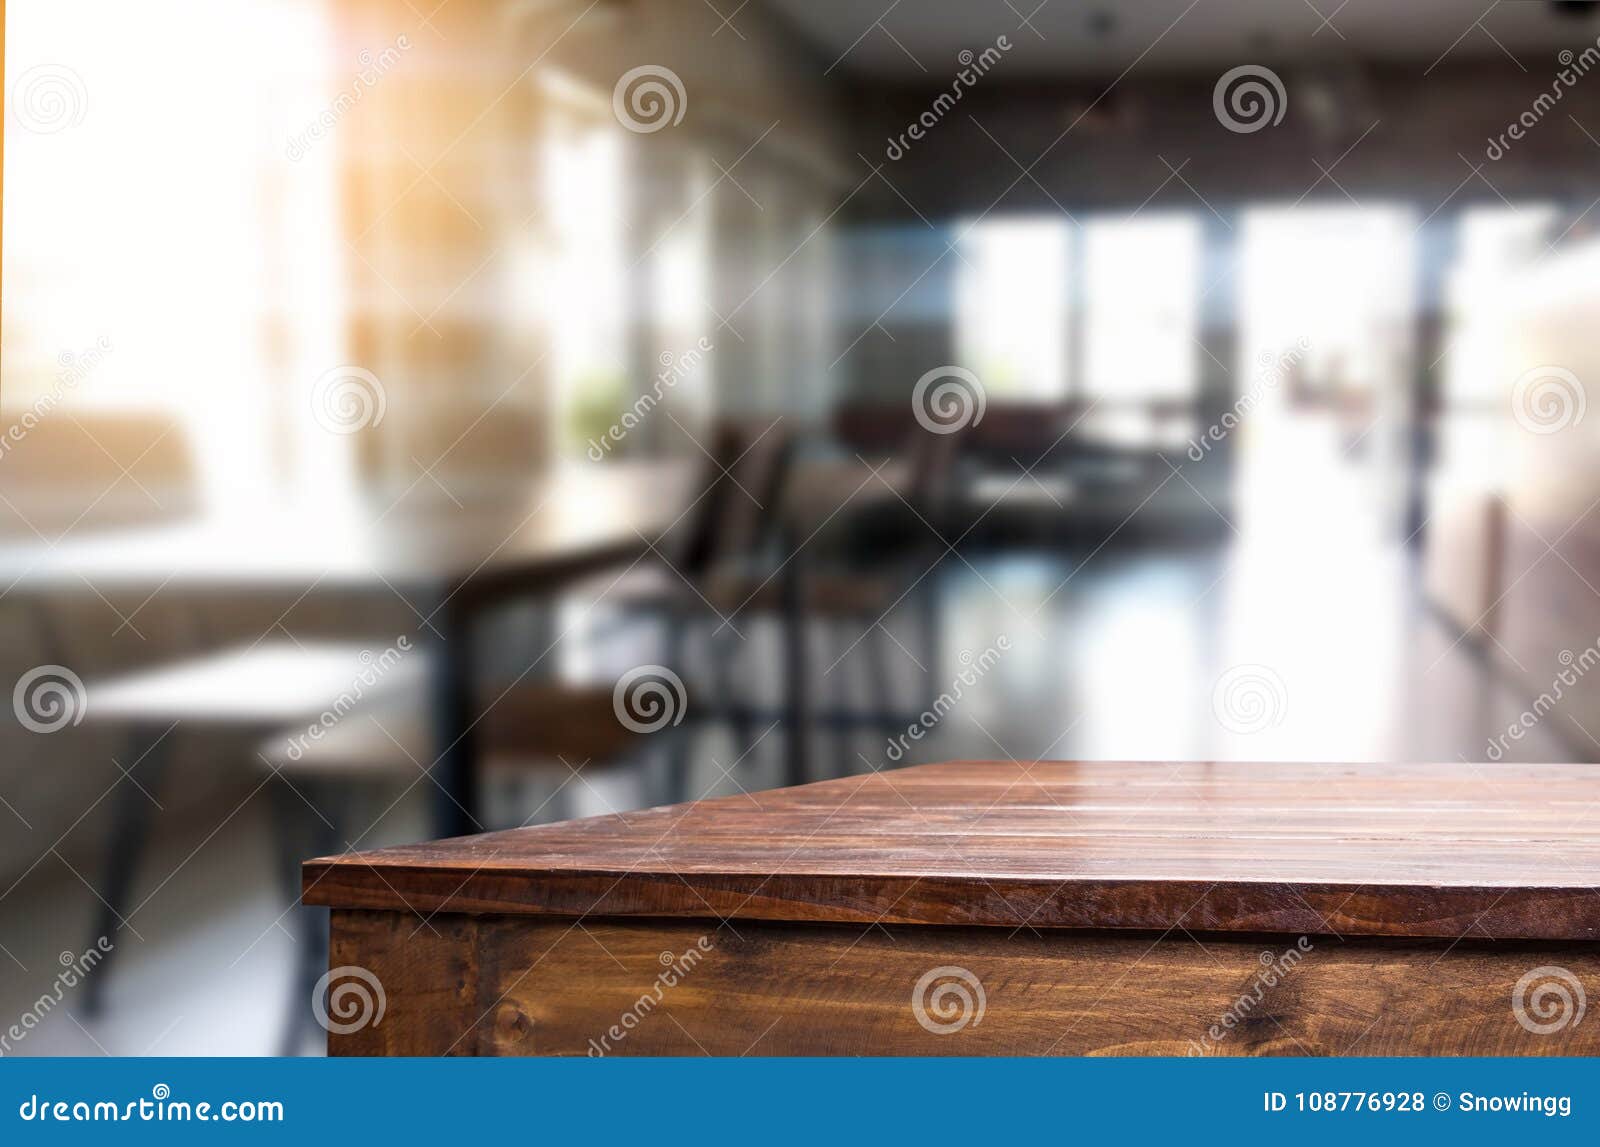 Внутренняя поверхность стола. Поверхность стола в комнате. Поверхность стола в интерьере. Пустая комната со столом. Комната со столом для фотошопа.